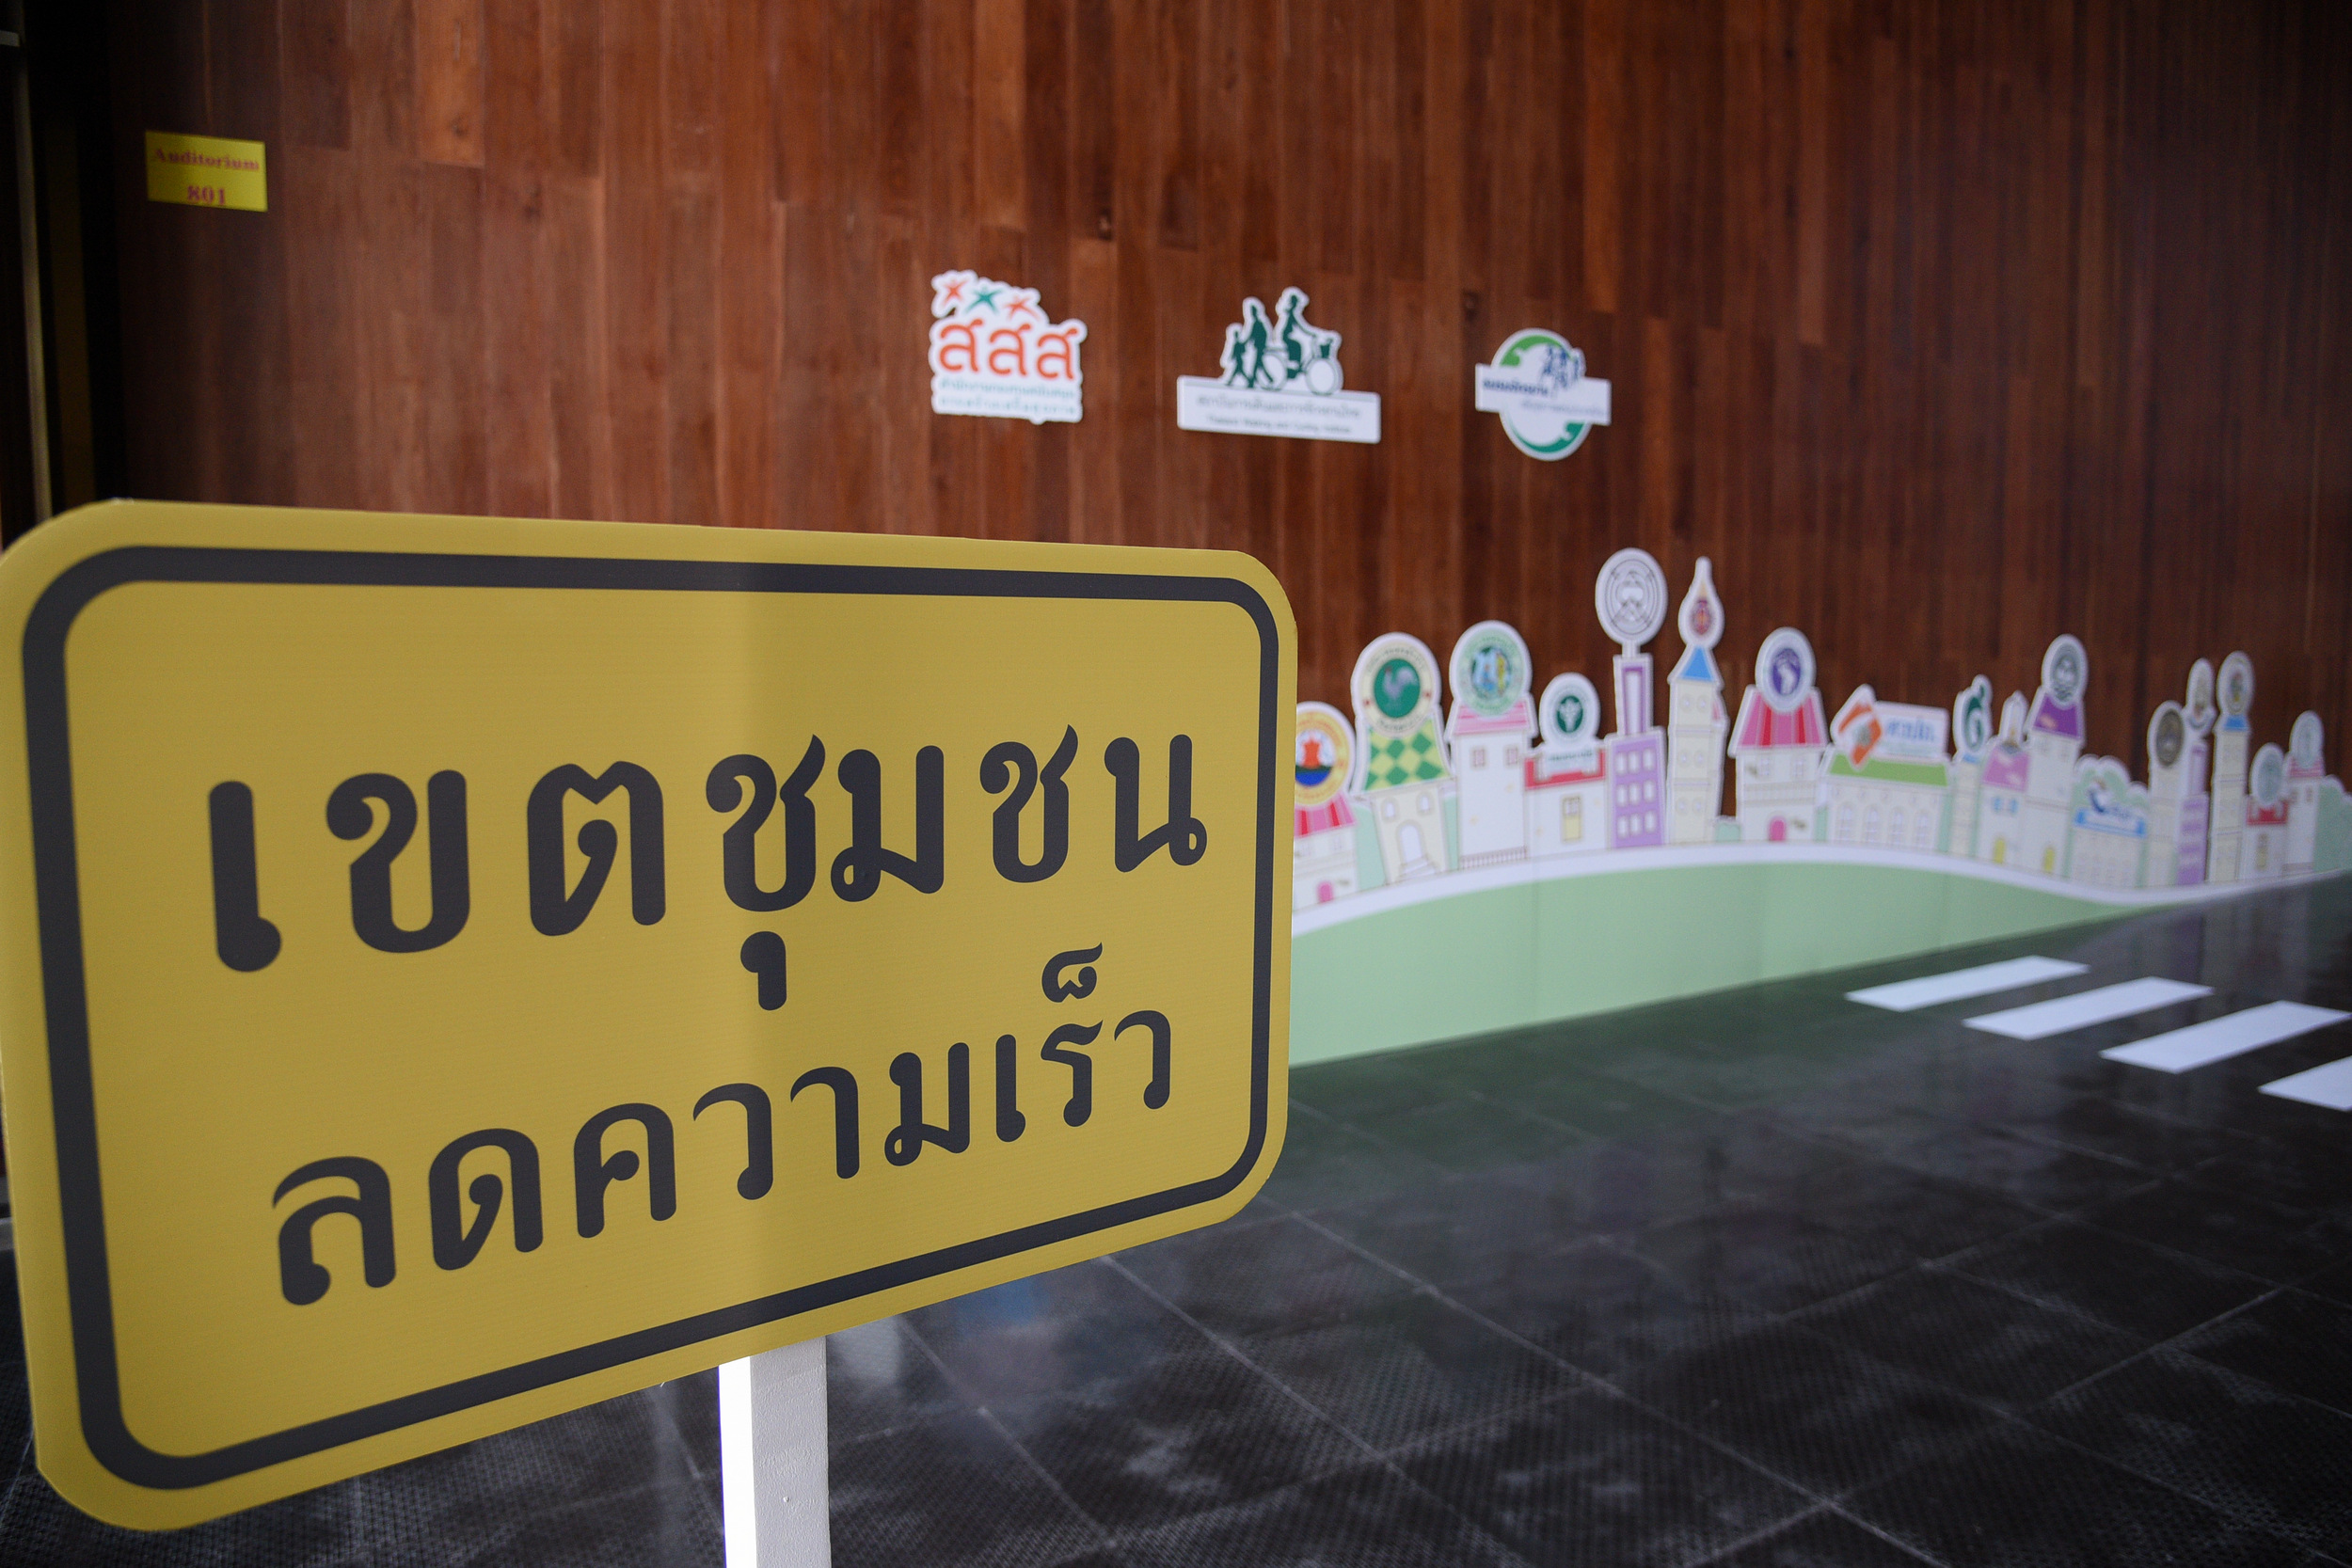 สร้างจุดจอดรถ ได้สิทธิ์พัฒนาห้าง thaihealth